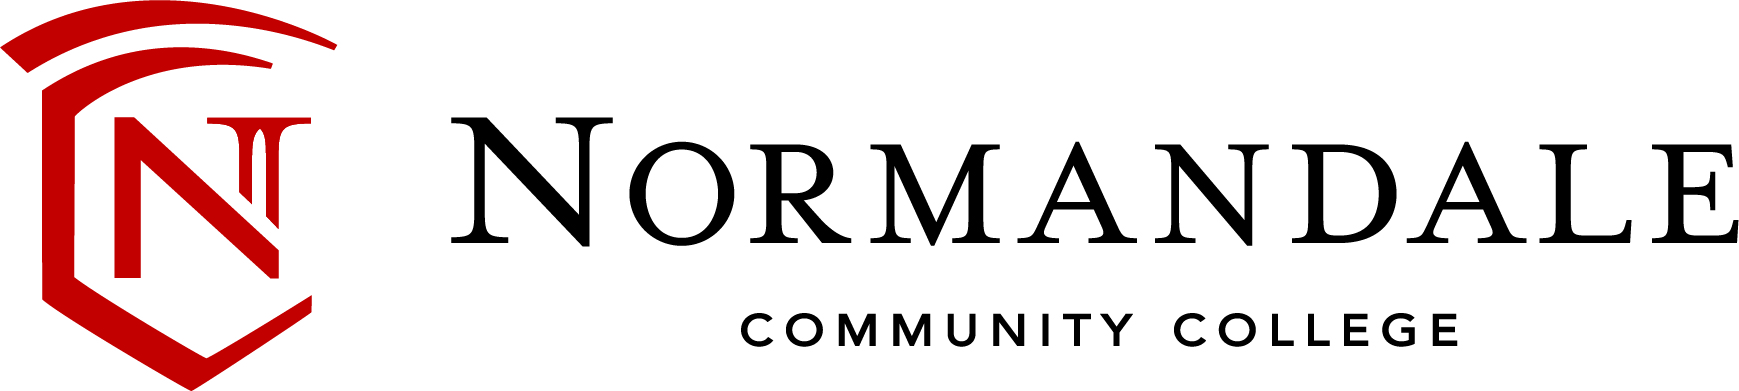 Norm-logo-horiz_CMYK.jpg